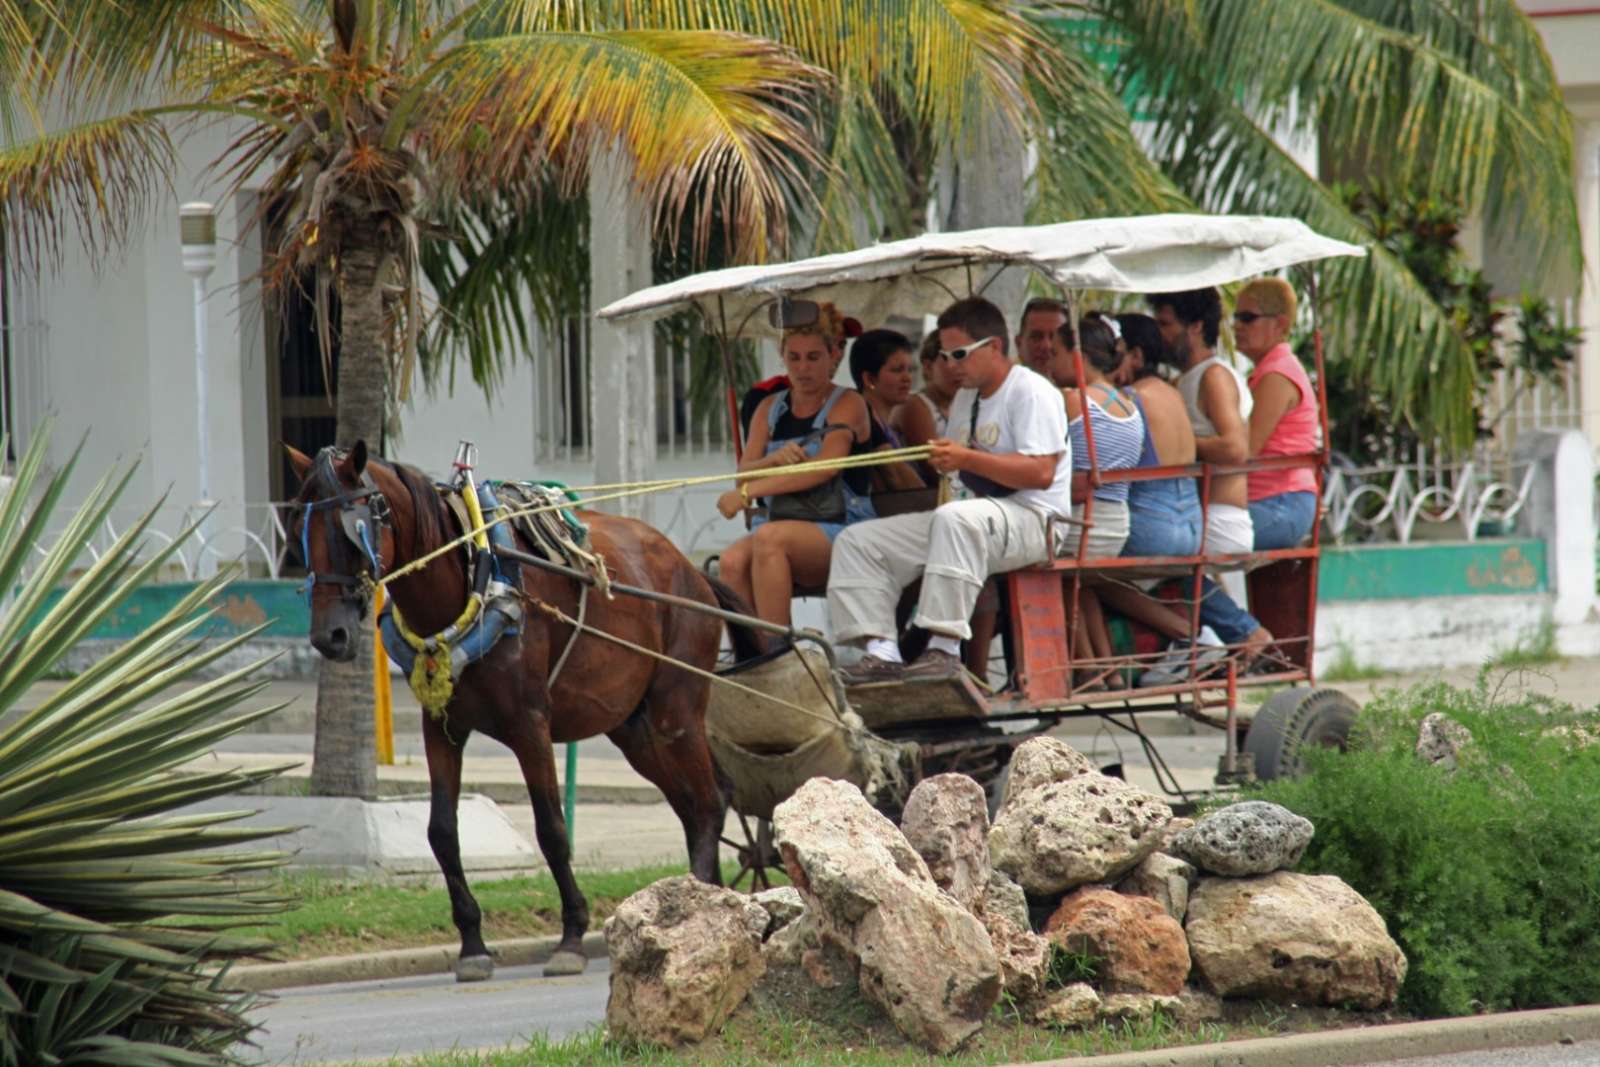 Horse carriage in Cienfuegos, Cuba